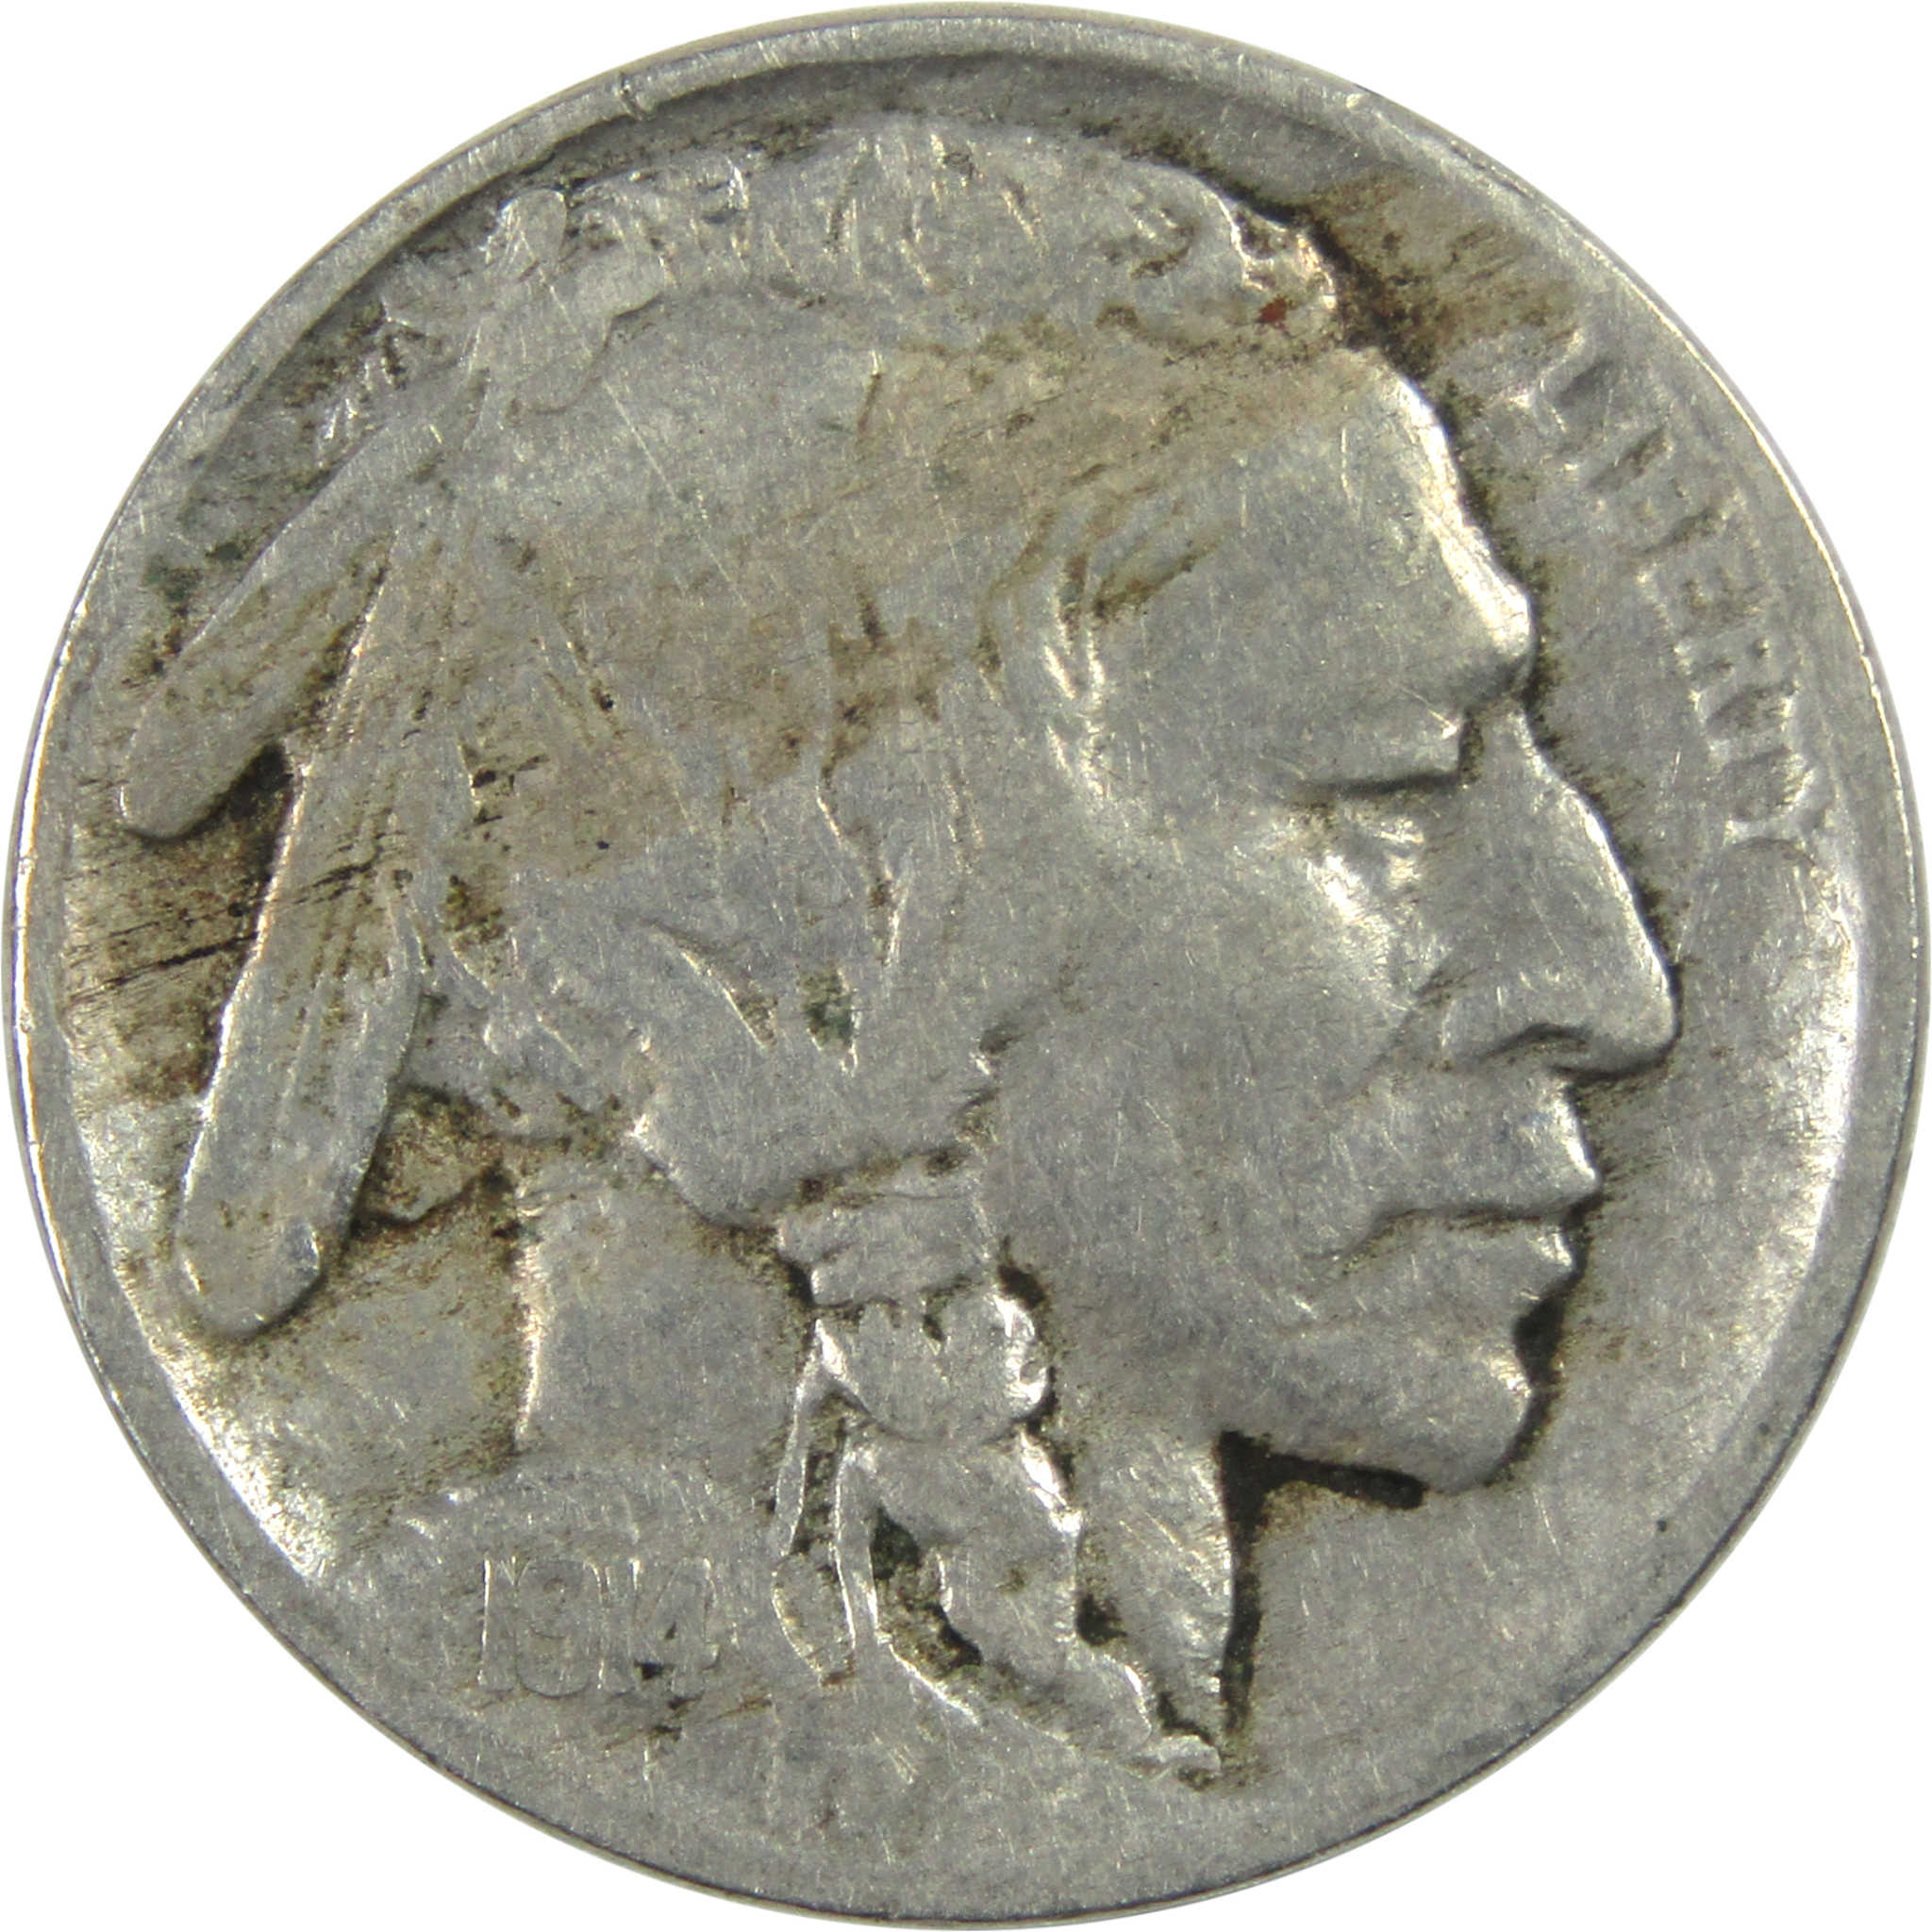 1914 Indian Head Buffalo Nickel F Fine 5c Coin SKU:I13012